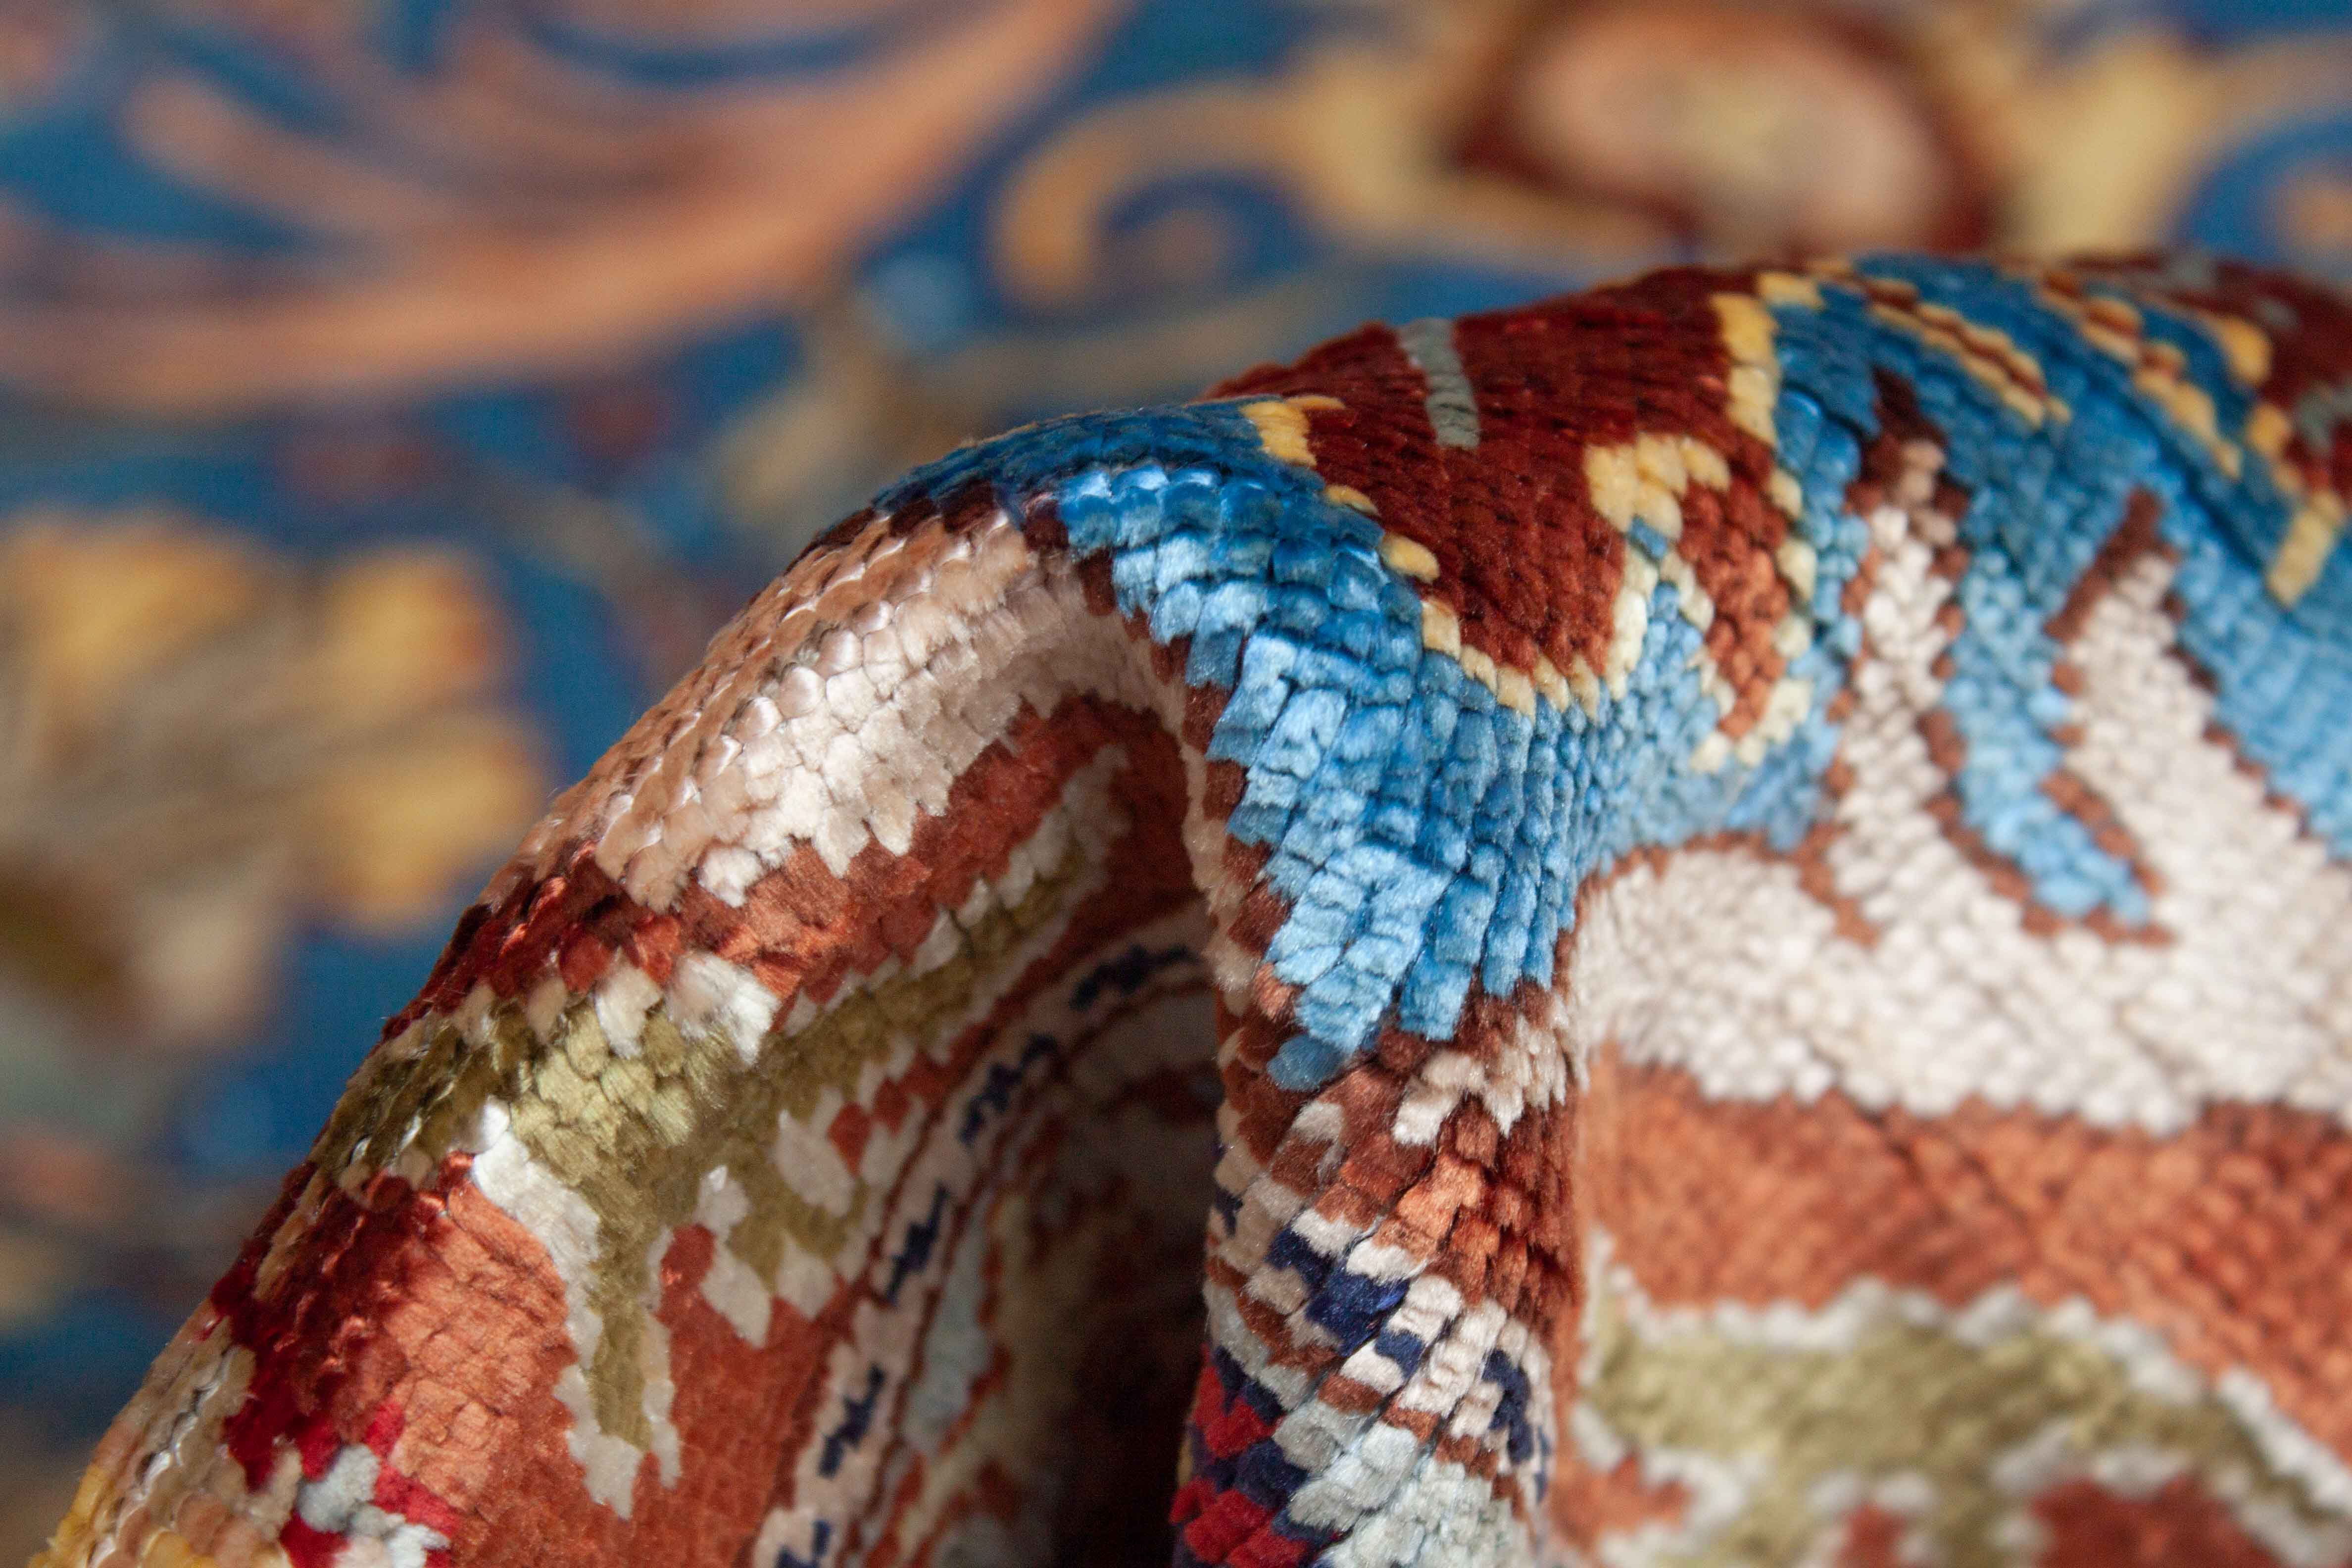 Eine Fotoaufnahme eines Kayseri Teppichs.